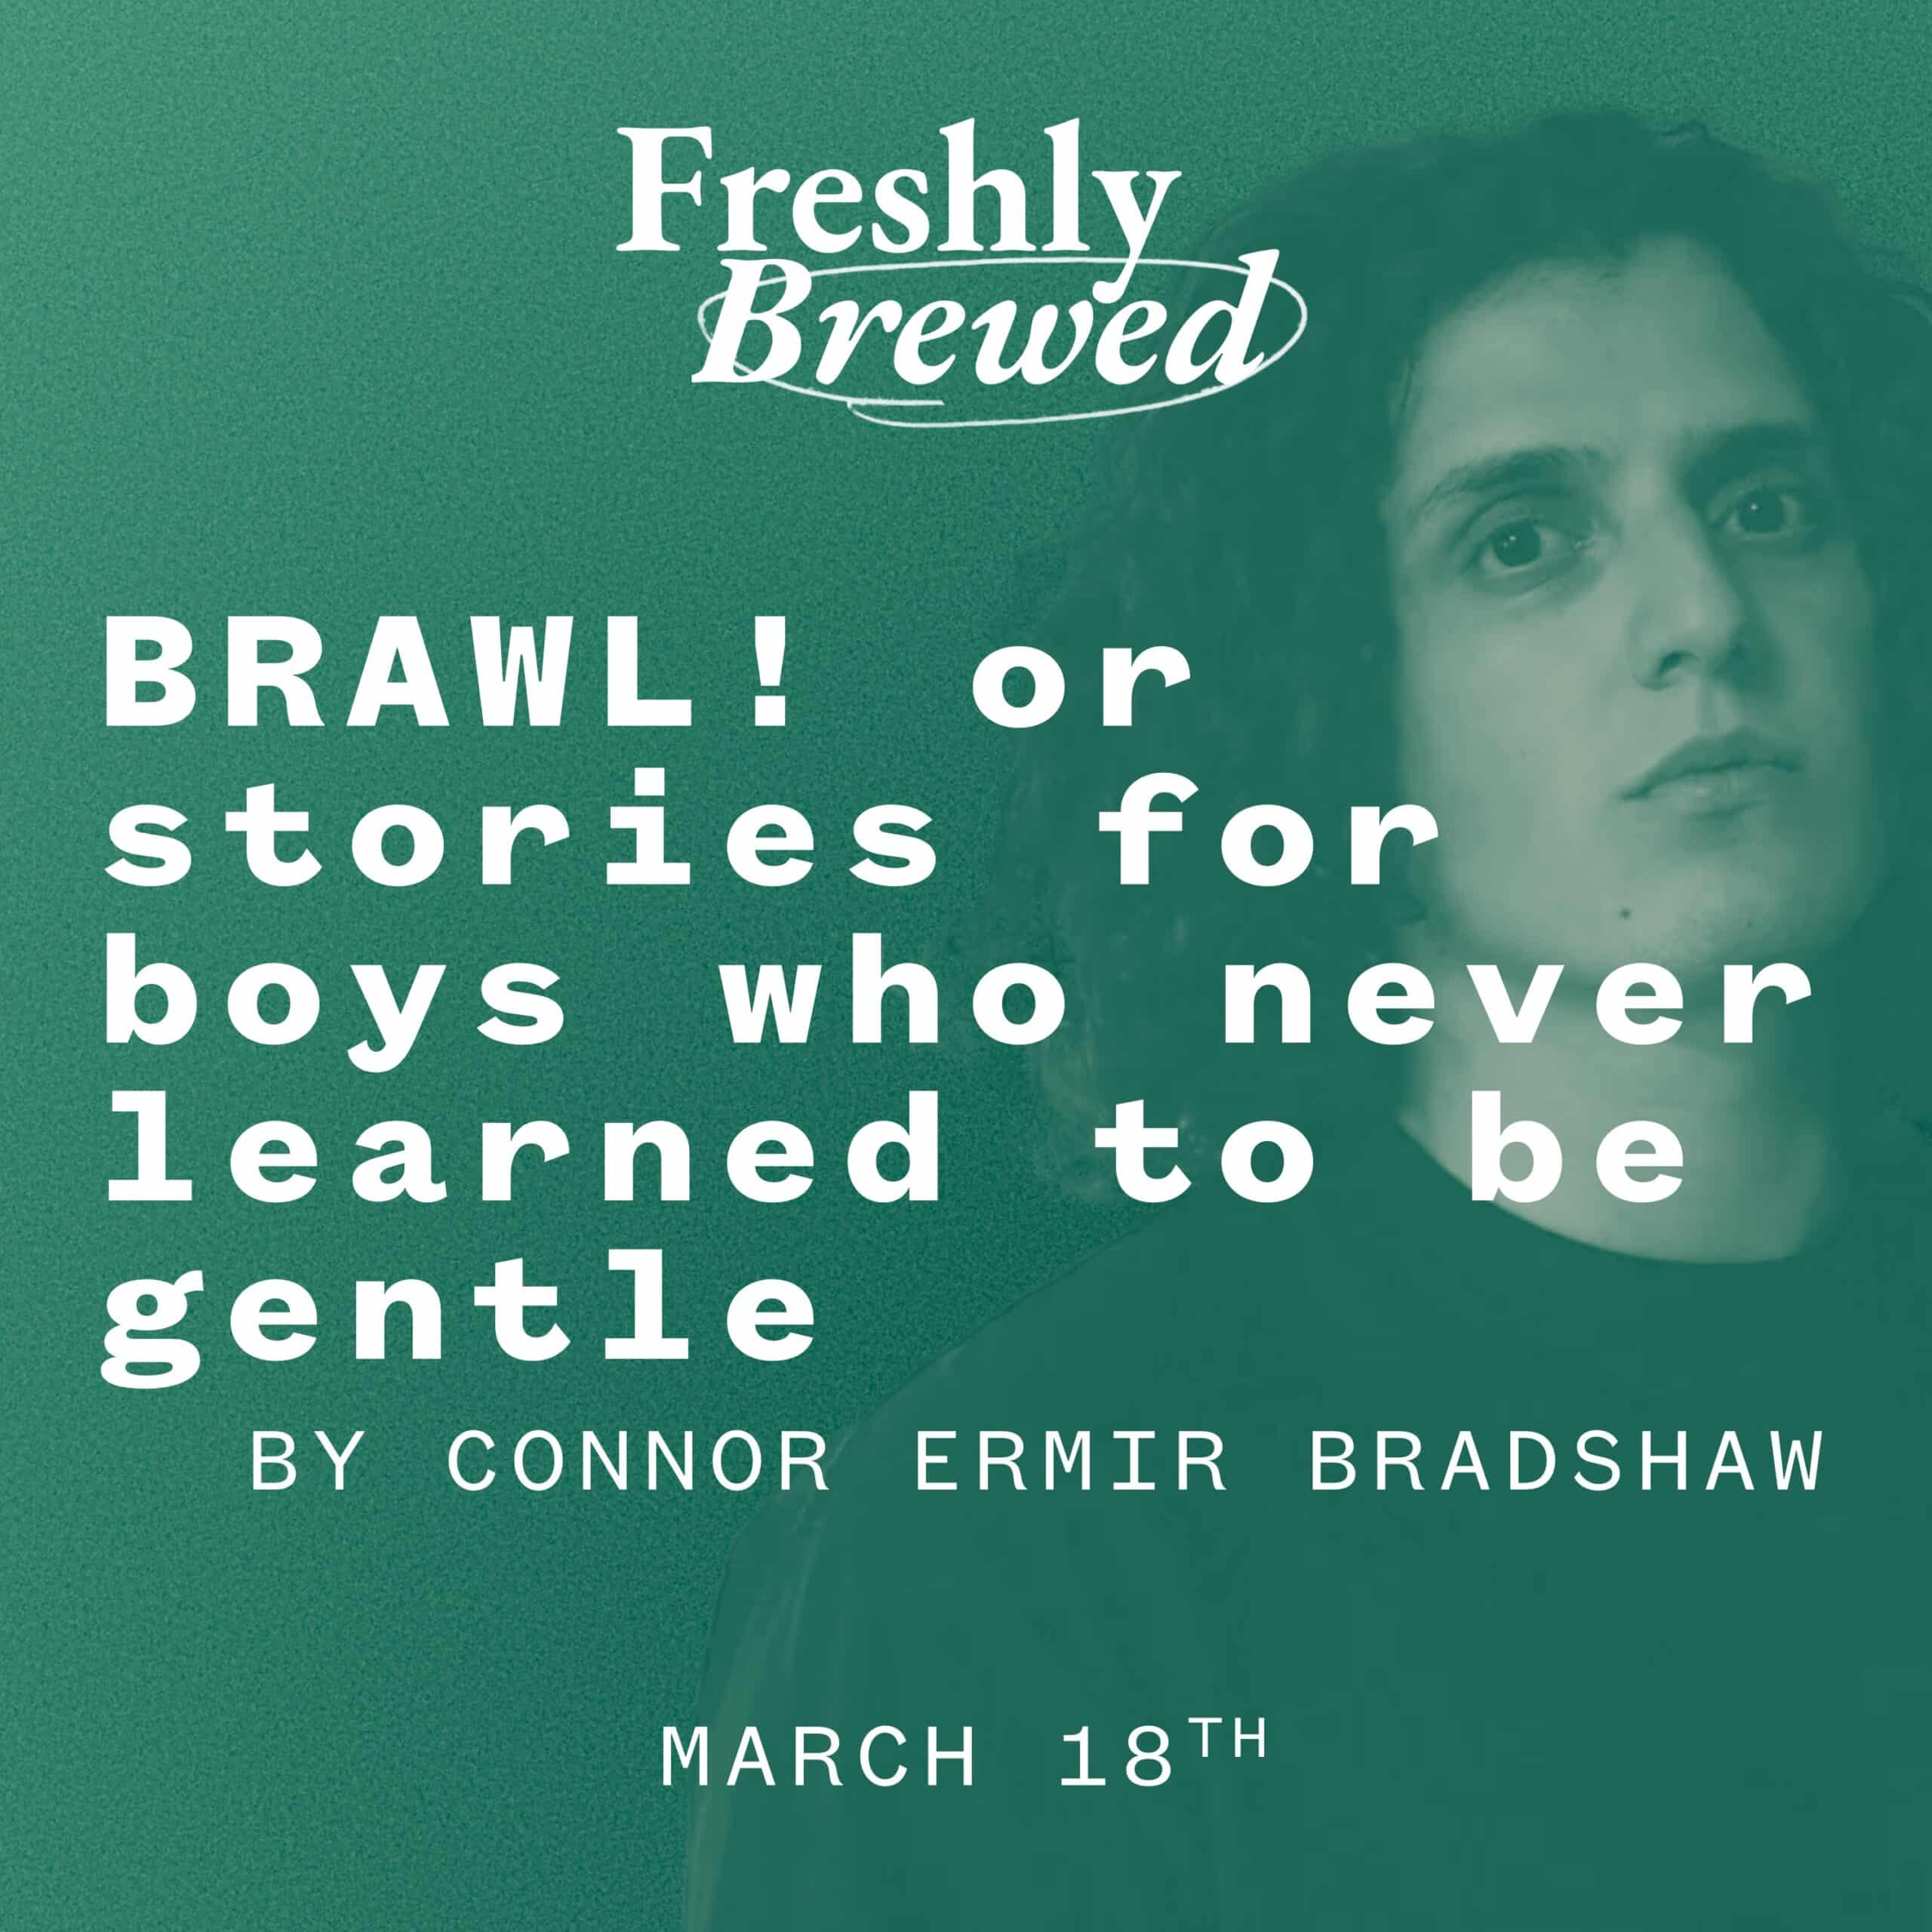 BRAWL! by Connor Ermir Bradshaw